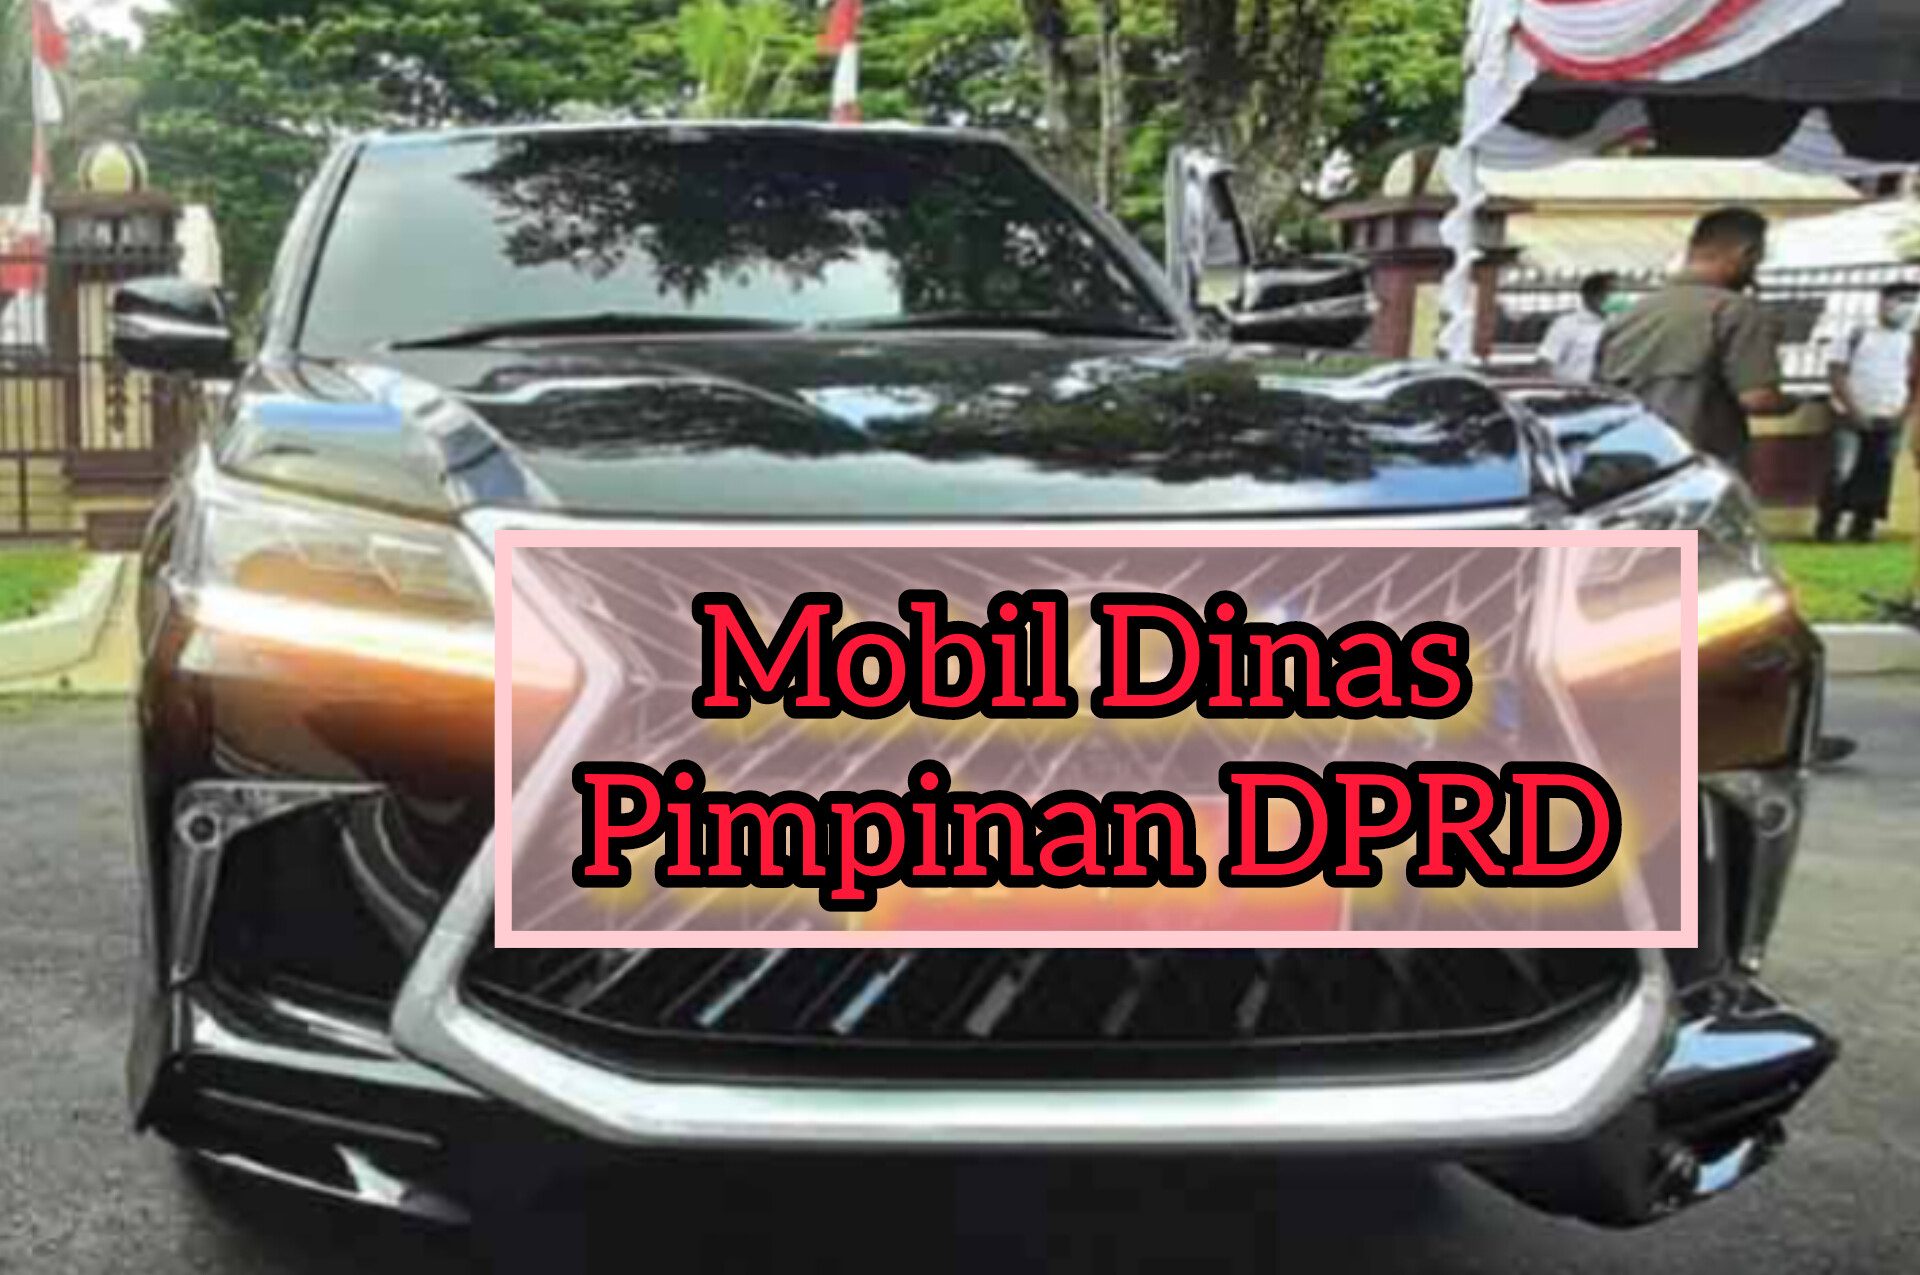 DPRD Provinsi Bengkulu Beli 4 Mobil Dinas Baru Untuk Pimpinan, Total Dana Capai 3,5 M